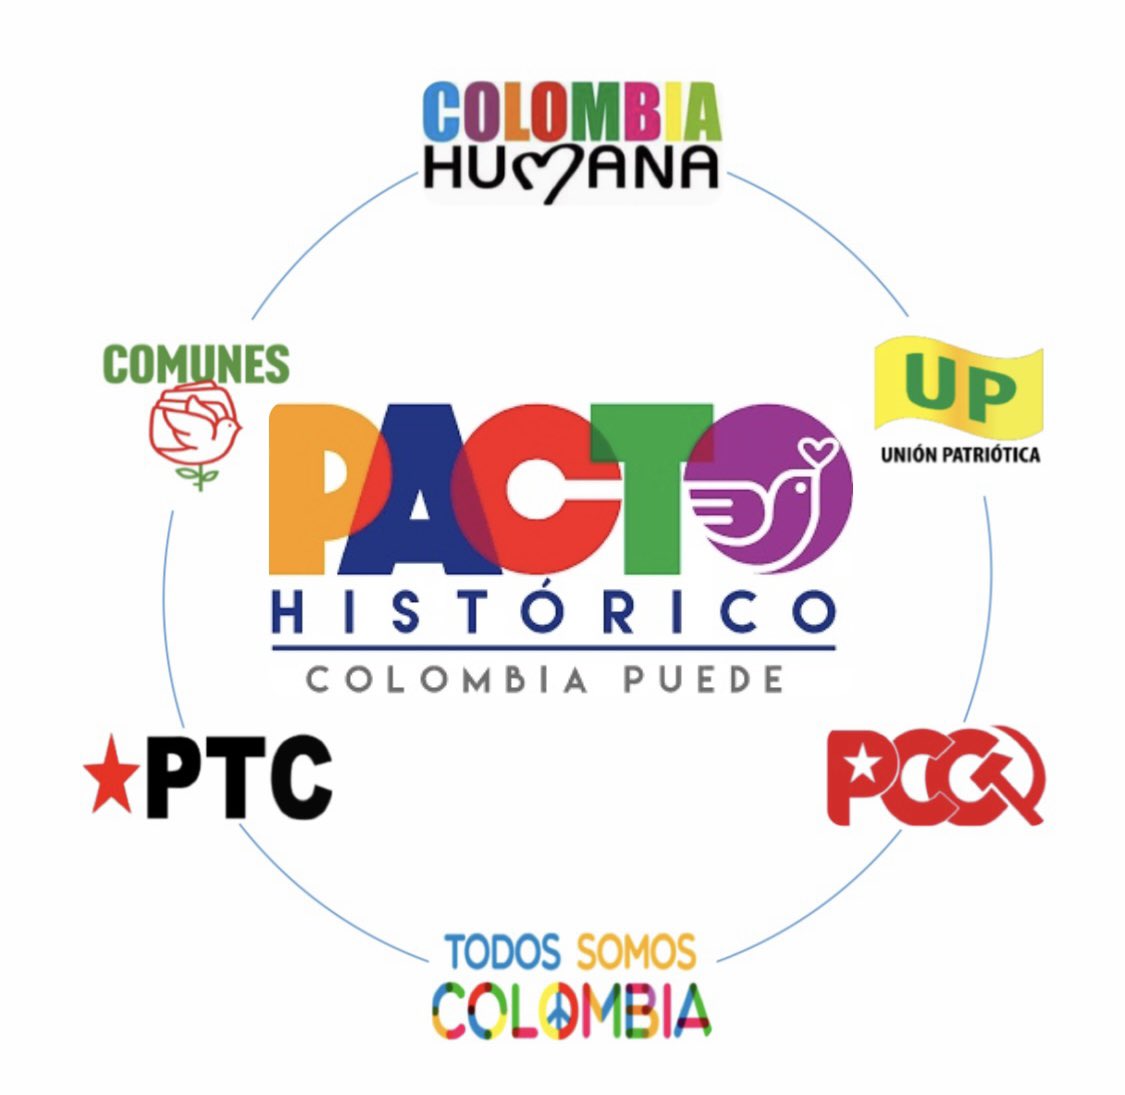 Gracias a los partidos que integran el @PactoCol en el Cesar @ColombiaHumana_ @UP_Colombia @PTrabajoC @ComunesCoL #PCC #TodosSomosColombia
Un llamado a la unidad de todos los partidos. La lucha por el #CAMBIO y por recuperar la democracia en el Cesar continua.